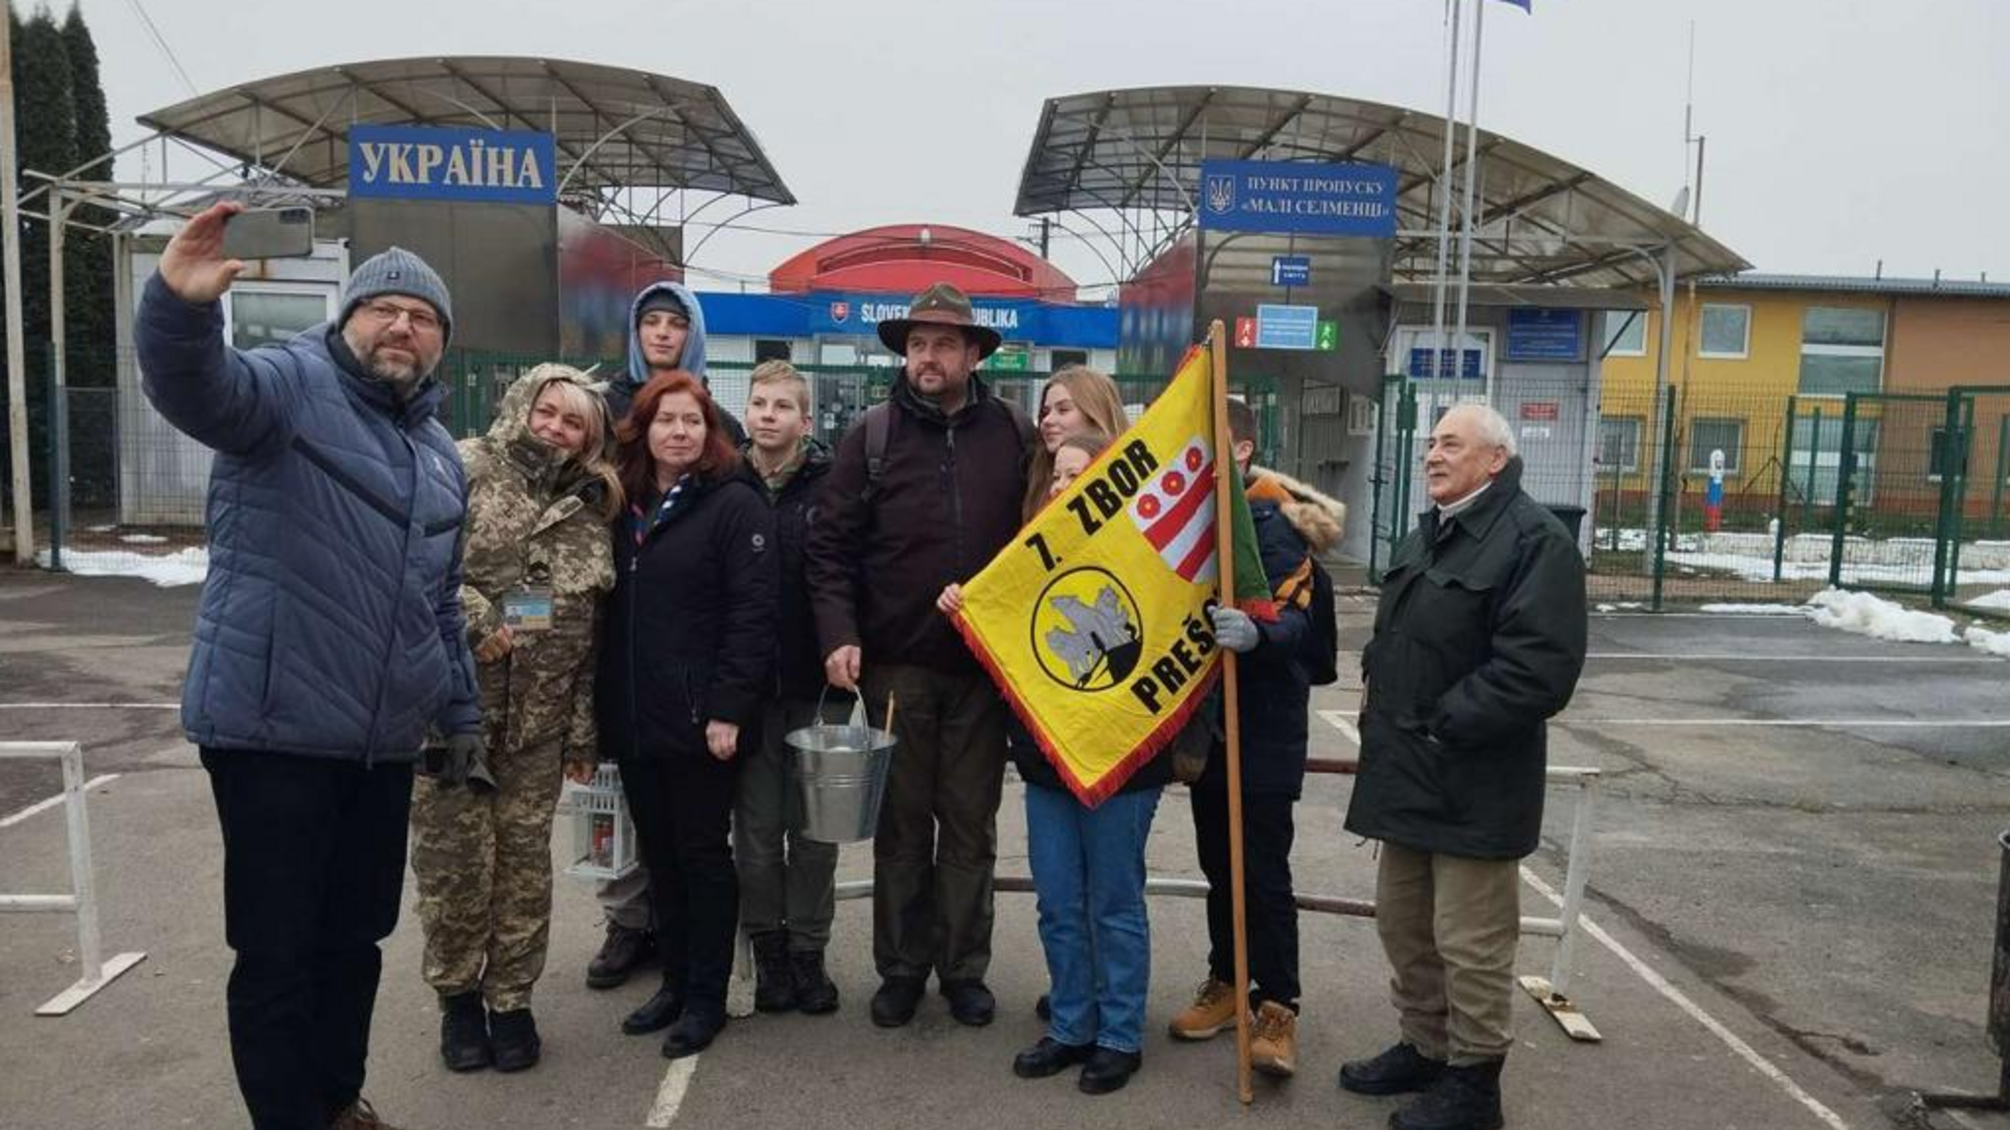 К Рождеству: словацкие скауты передали украинским пограничникам Вифлеемский огонь мира